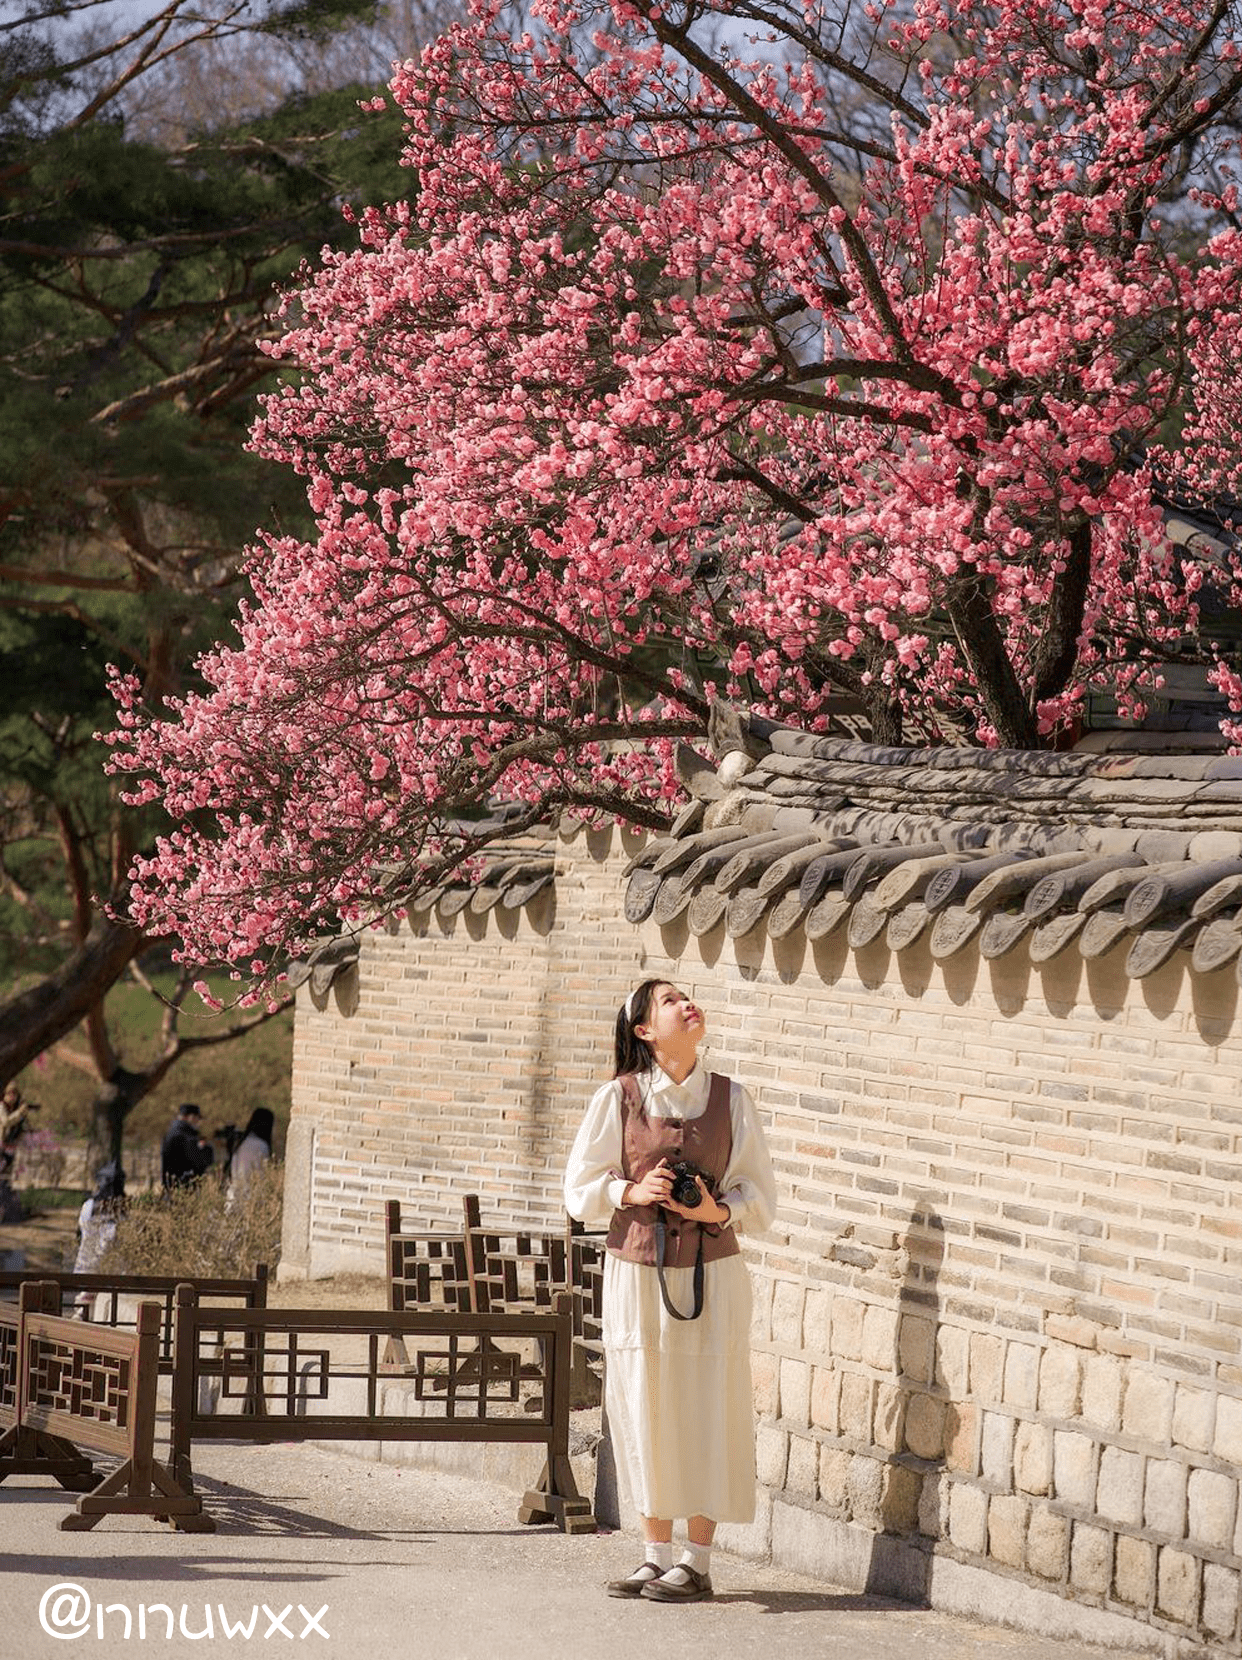 韩国传统宫殿昌德宫中的红梅花正在盛开。